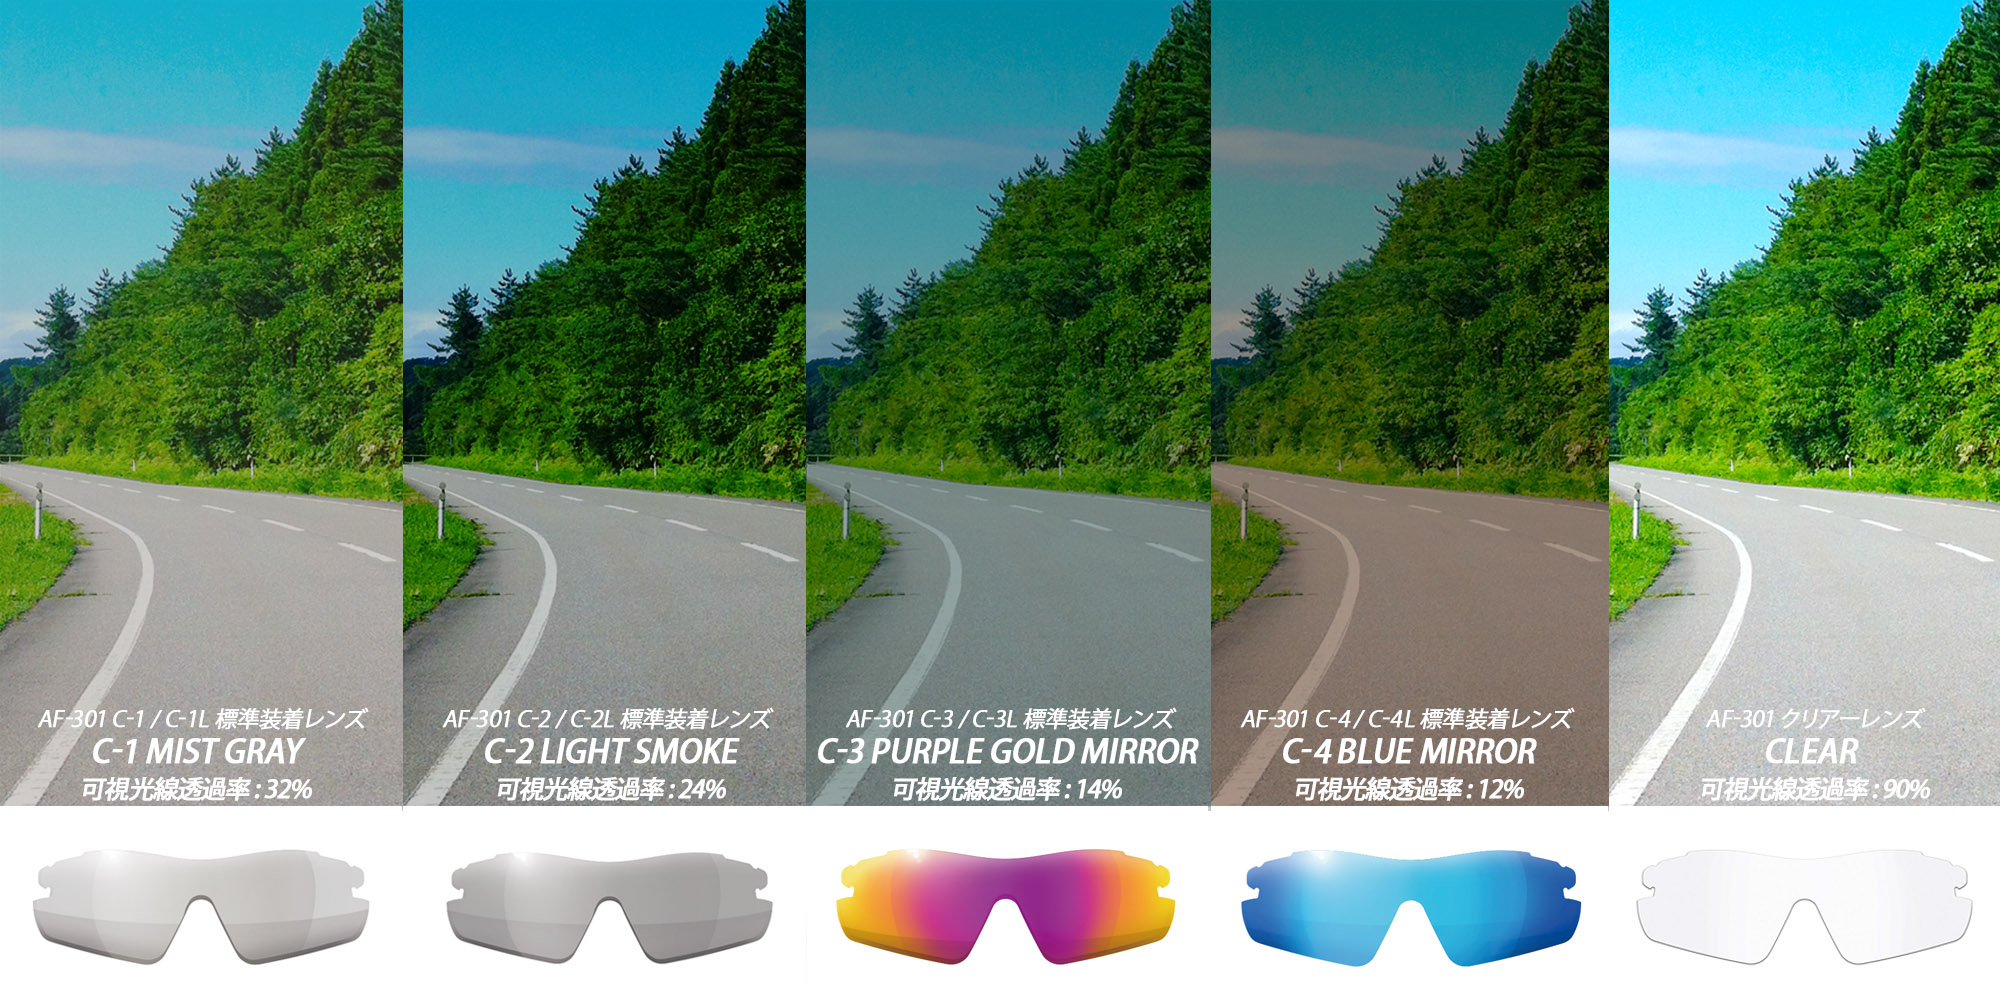 レンズの見え方比較 エアフライ標準装着レンズ ランニングや自転車、ゴルフにトライアスロンなど幅広く使用可能です